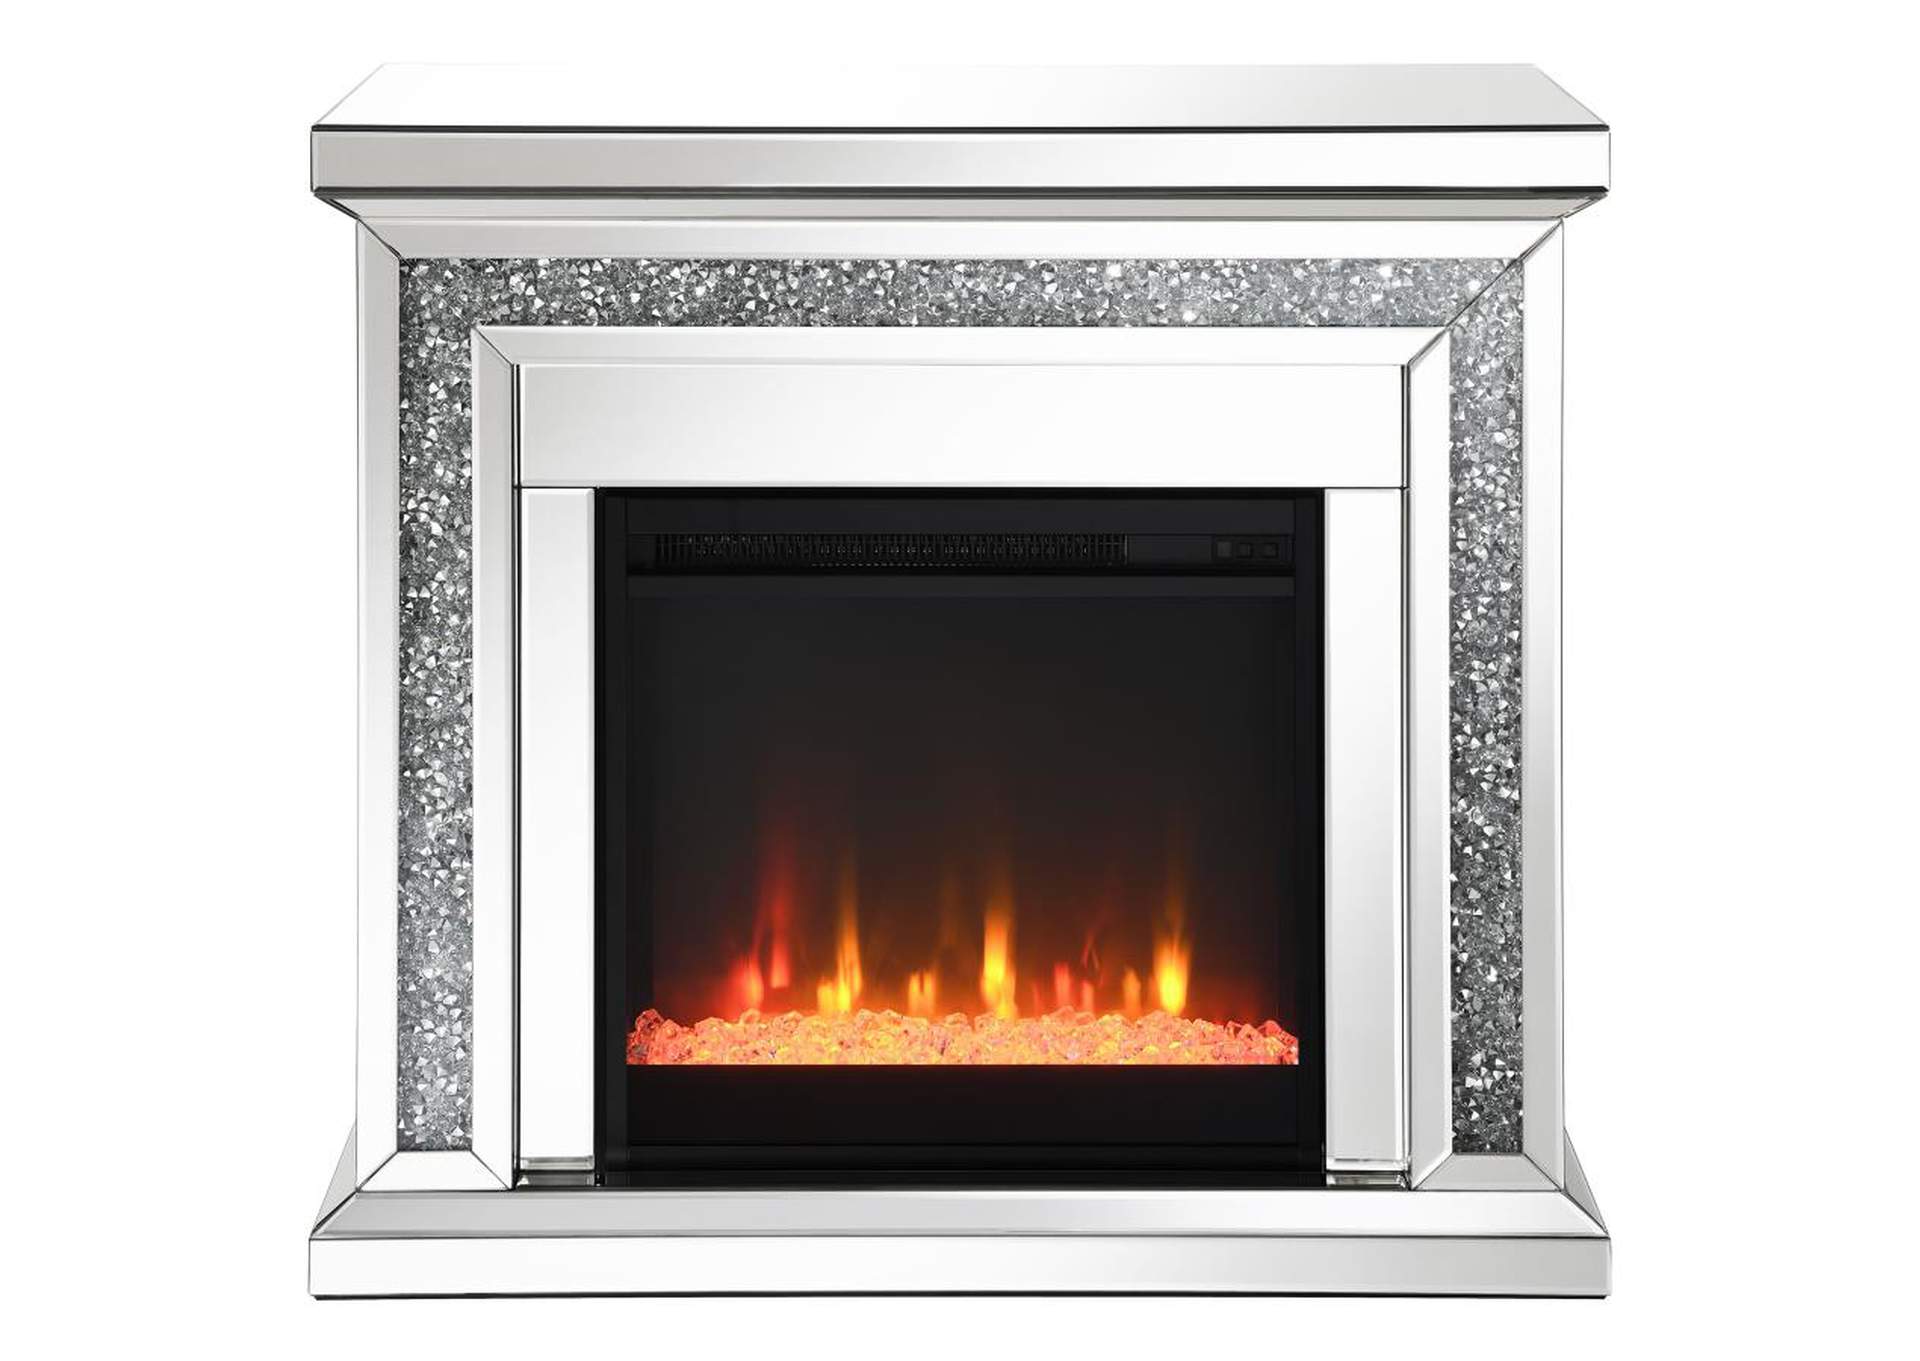 Lorelai Rectangular Freestanding Fireplace Mirror,Coaster Furniture